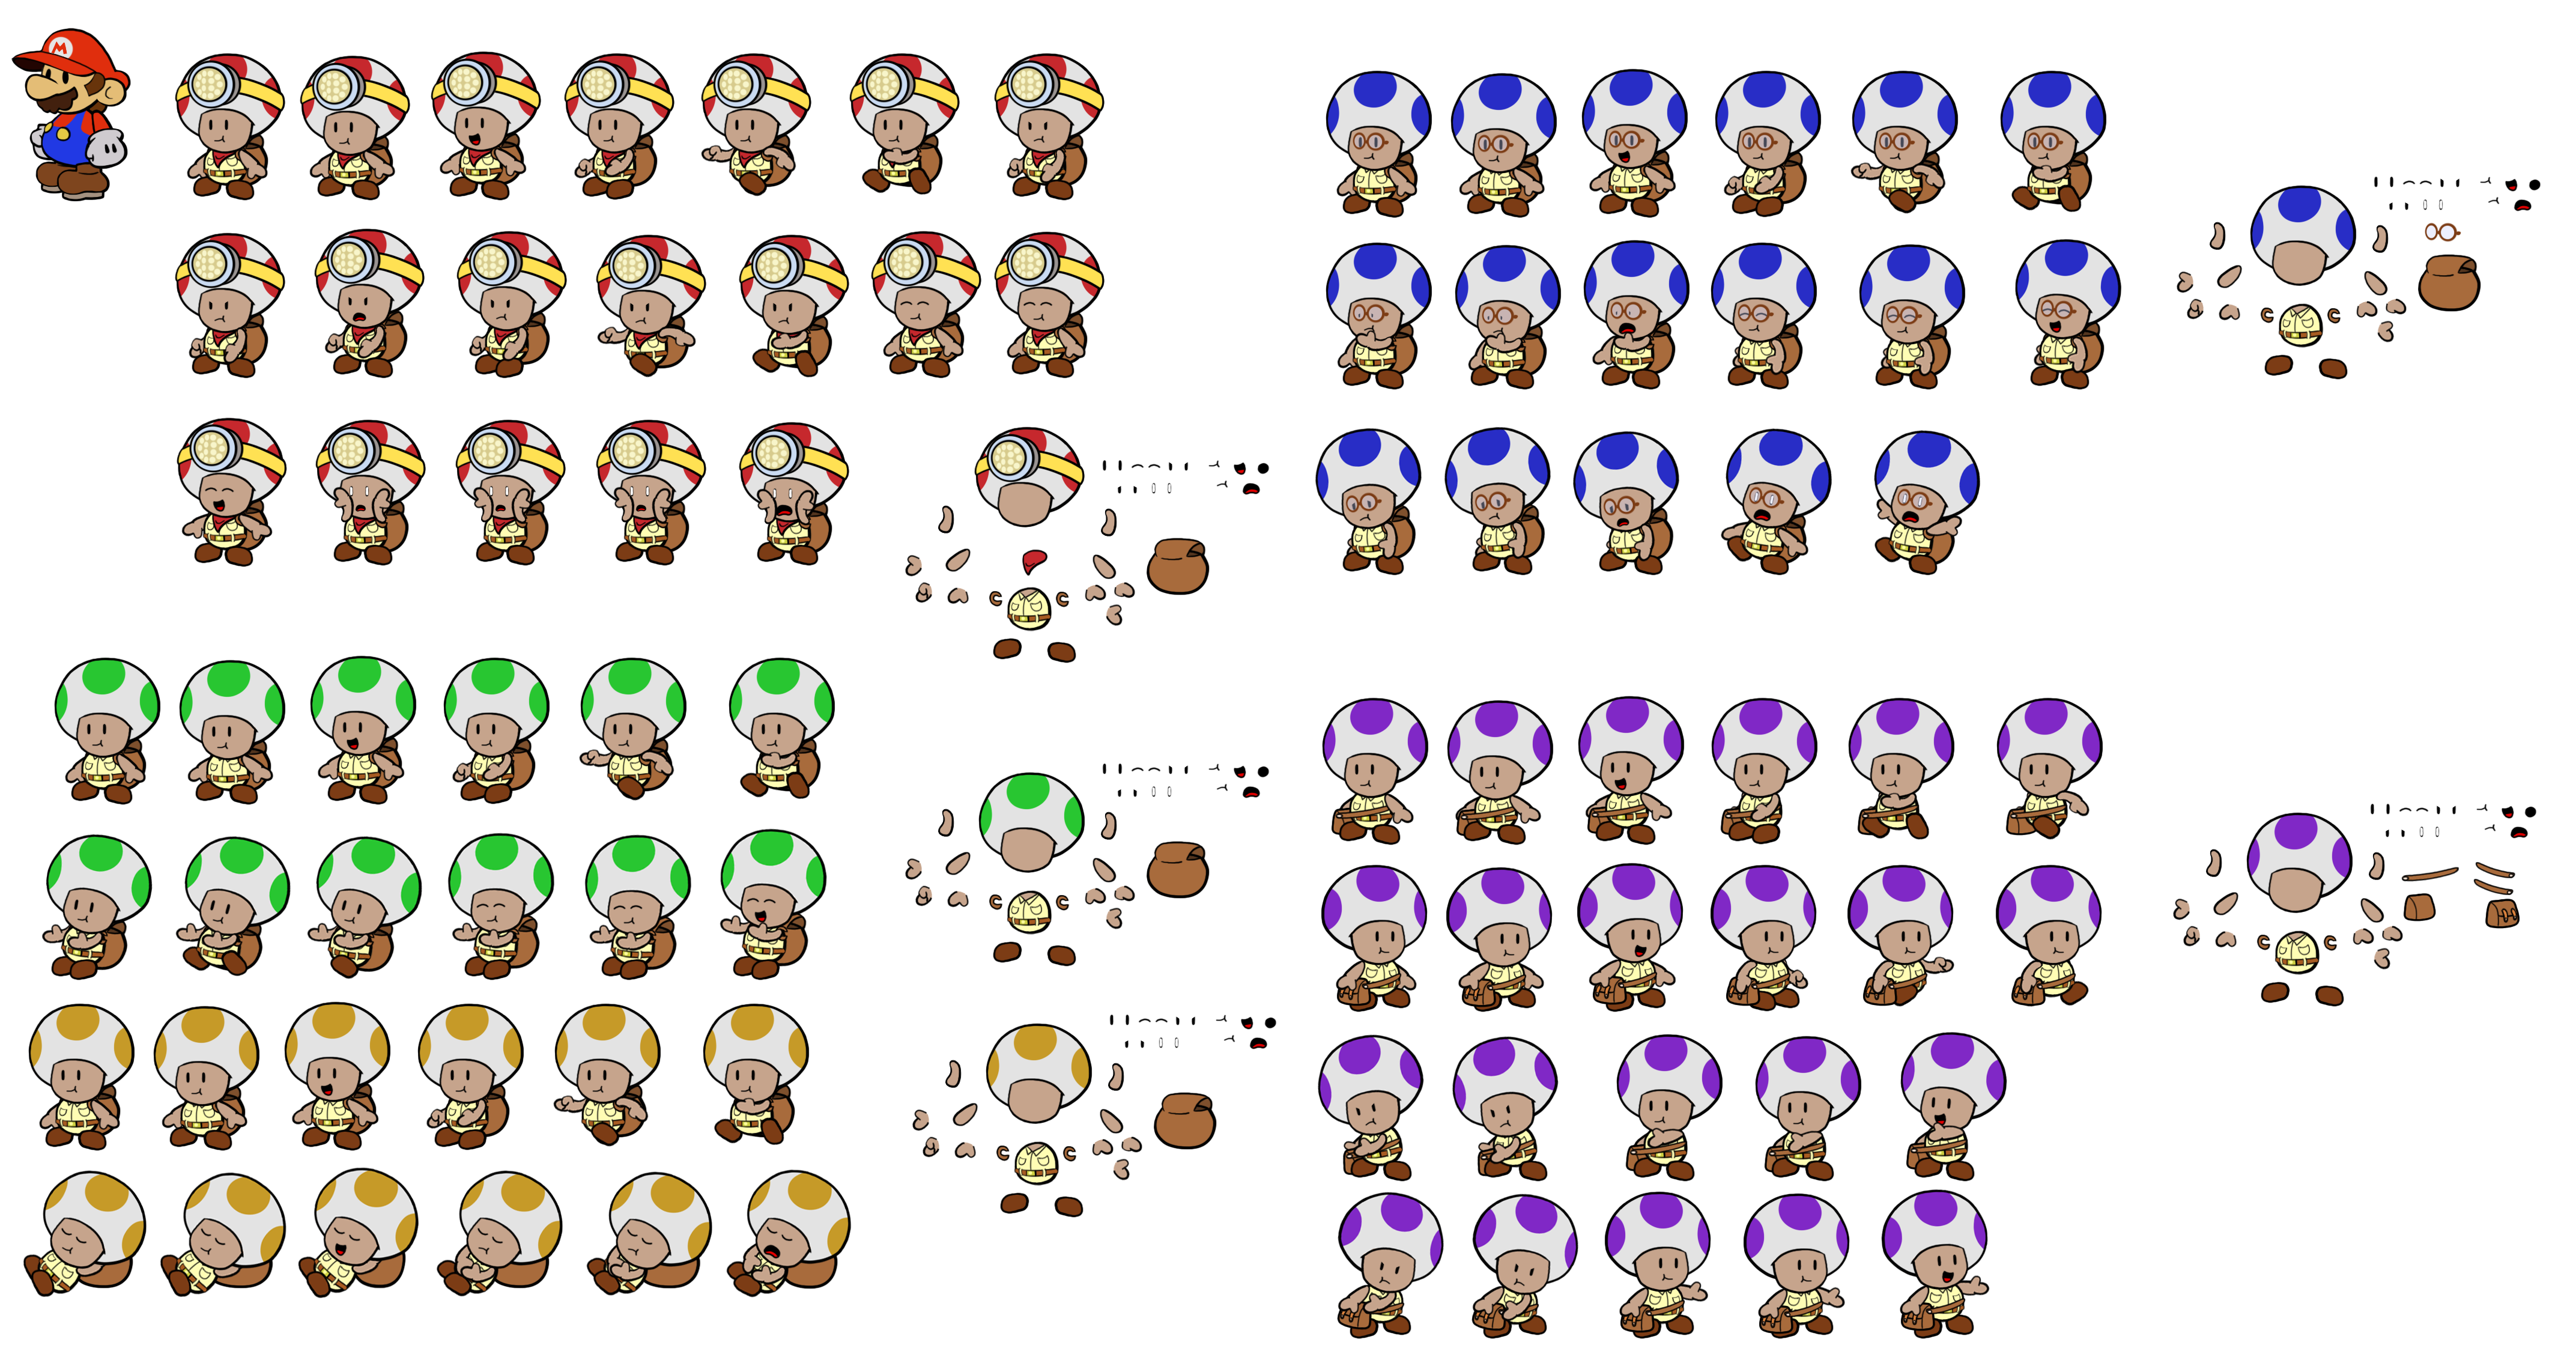 Toad Brigade (Paper Mario-Style)